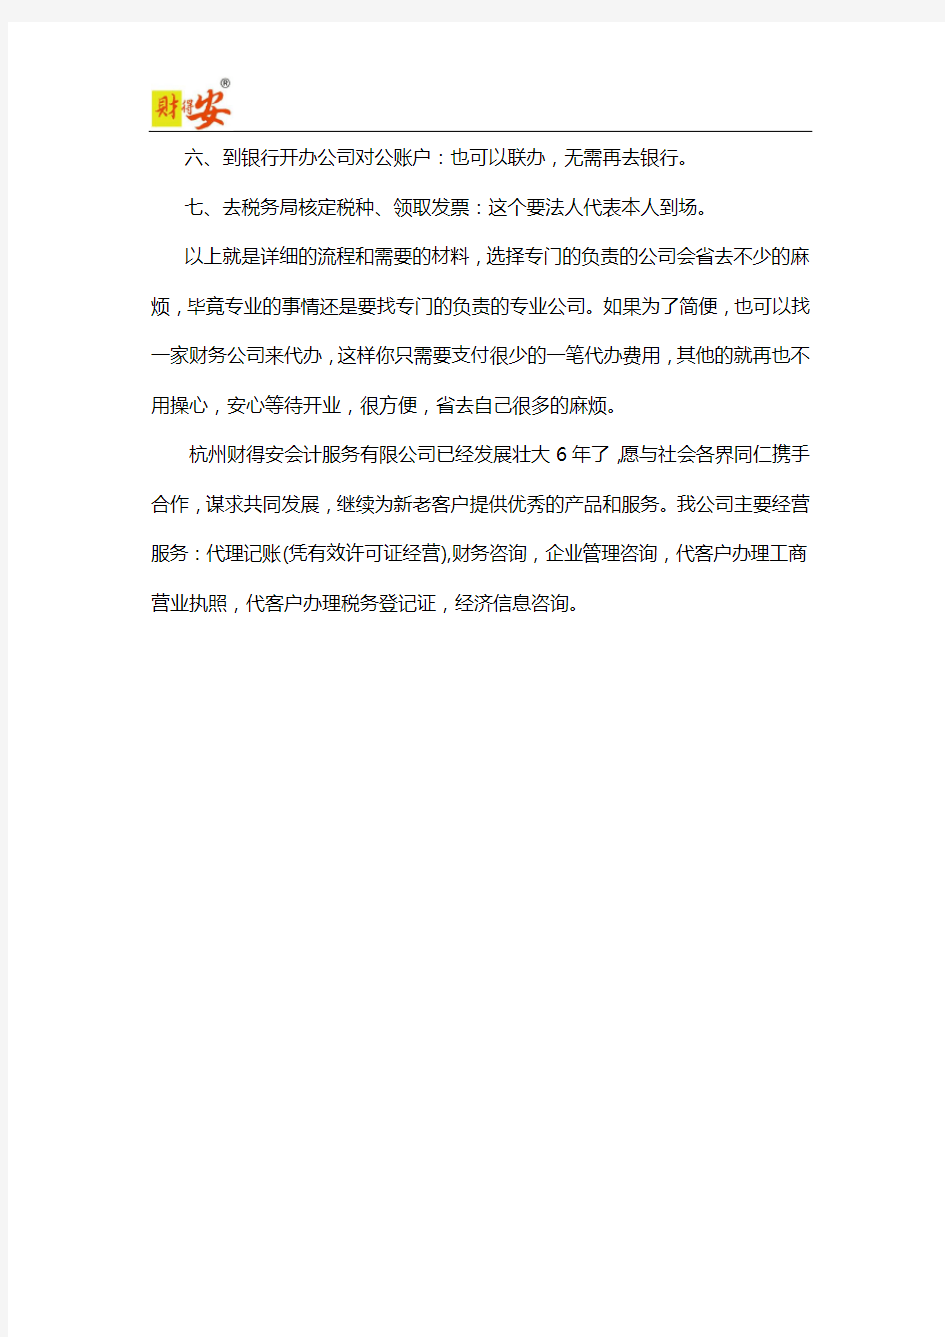 2020年杭州注册公司流程